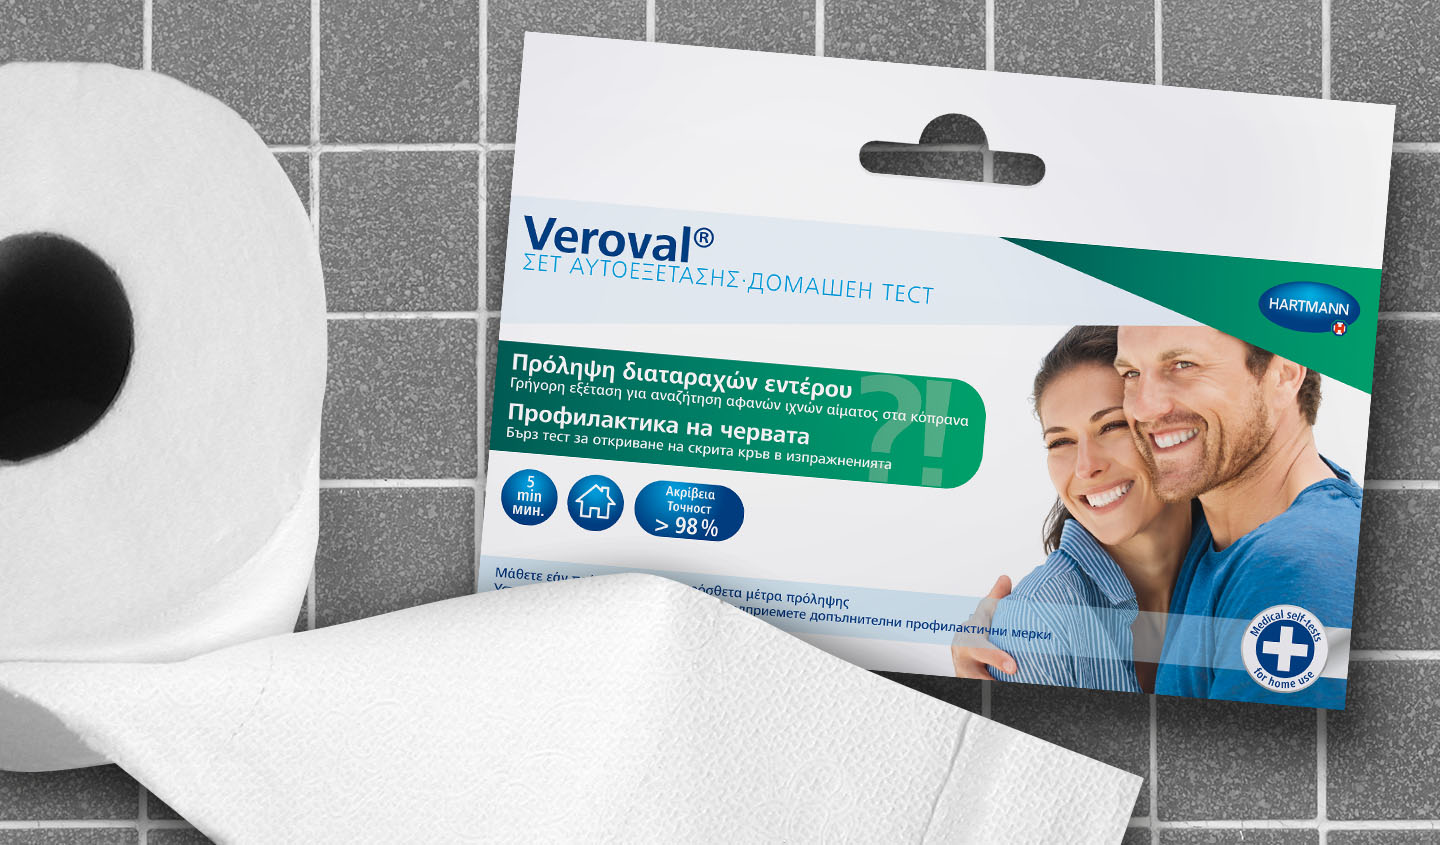 Verpackung des Veroval® Selbst-Test zur Darmvorsorge liegt neben einer Rolle Toilettenpapier